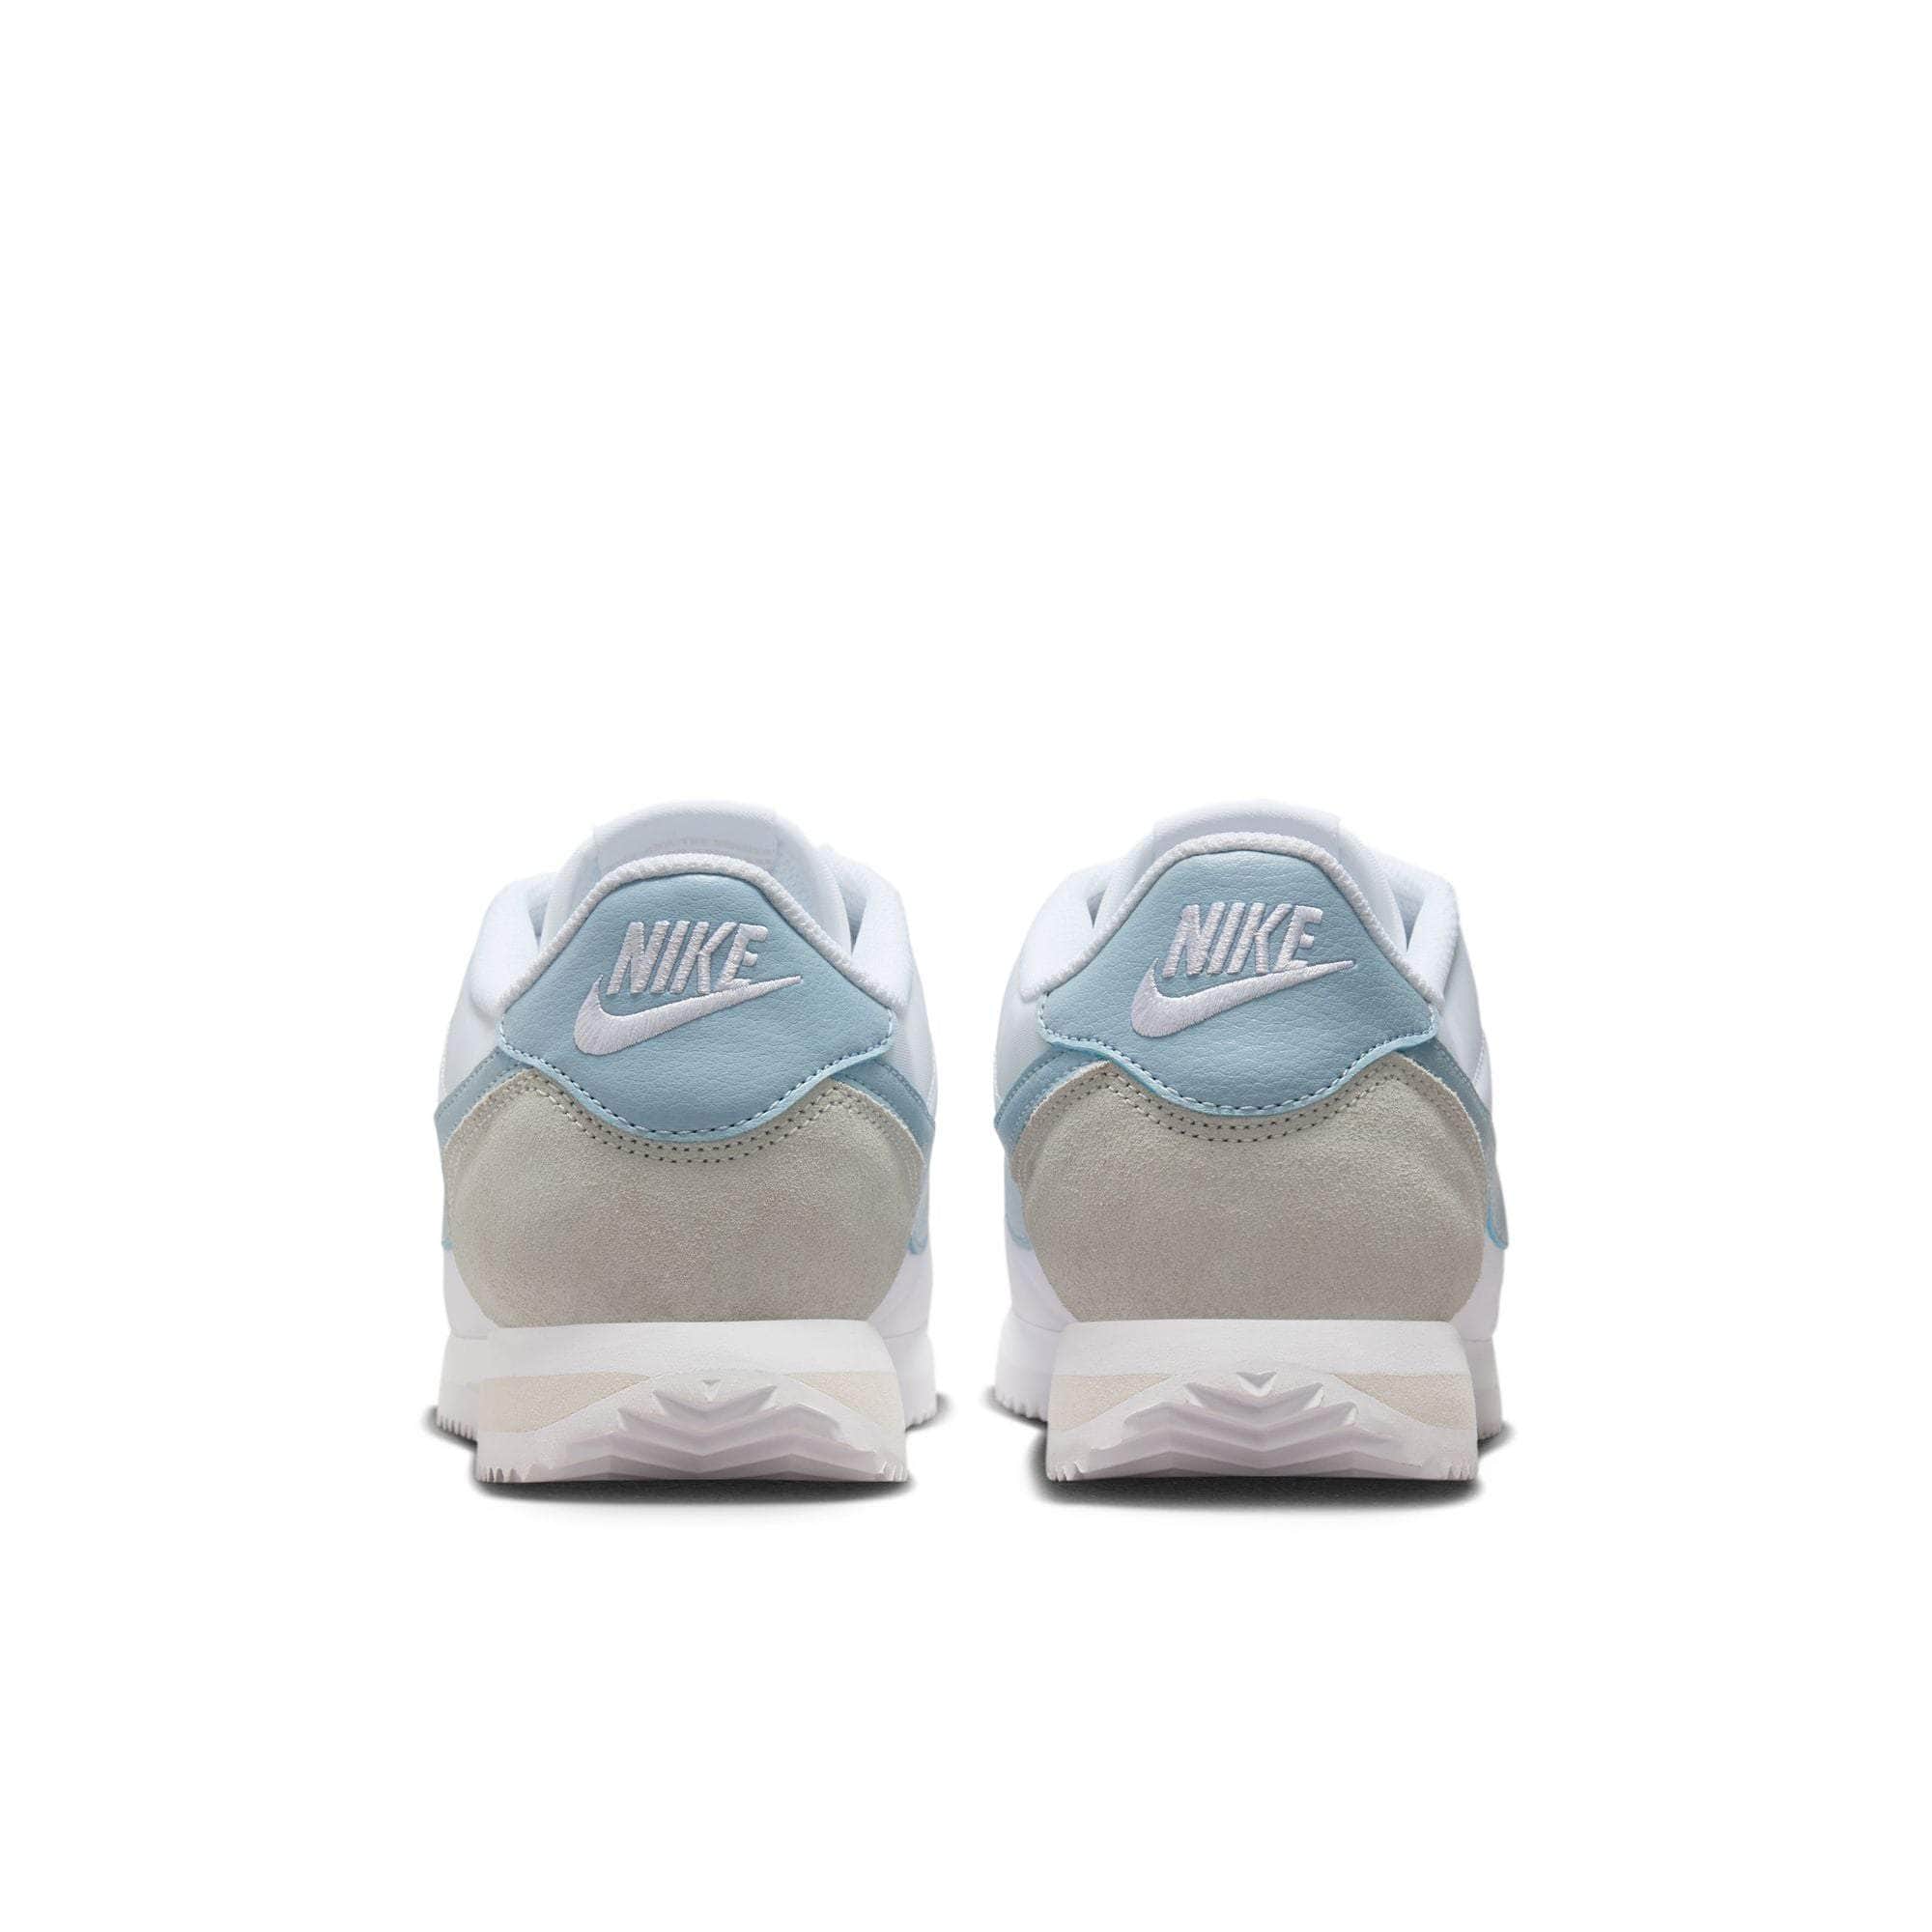 Nike Footwear Nike Cortez "Light Armory Blue" - Women's